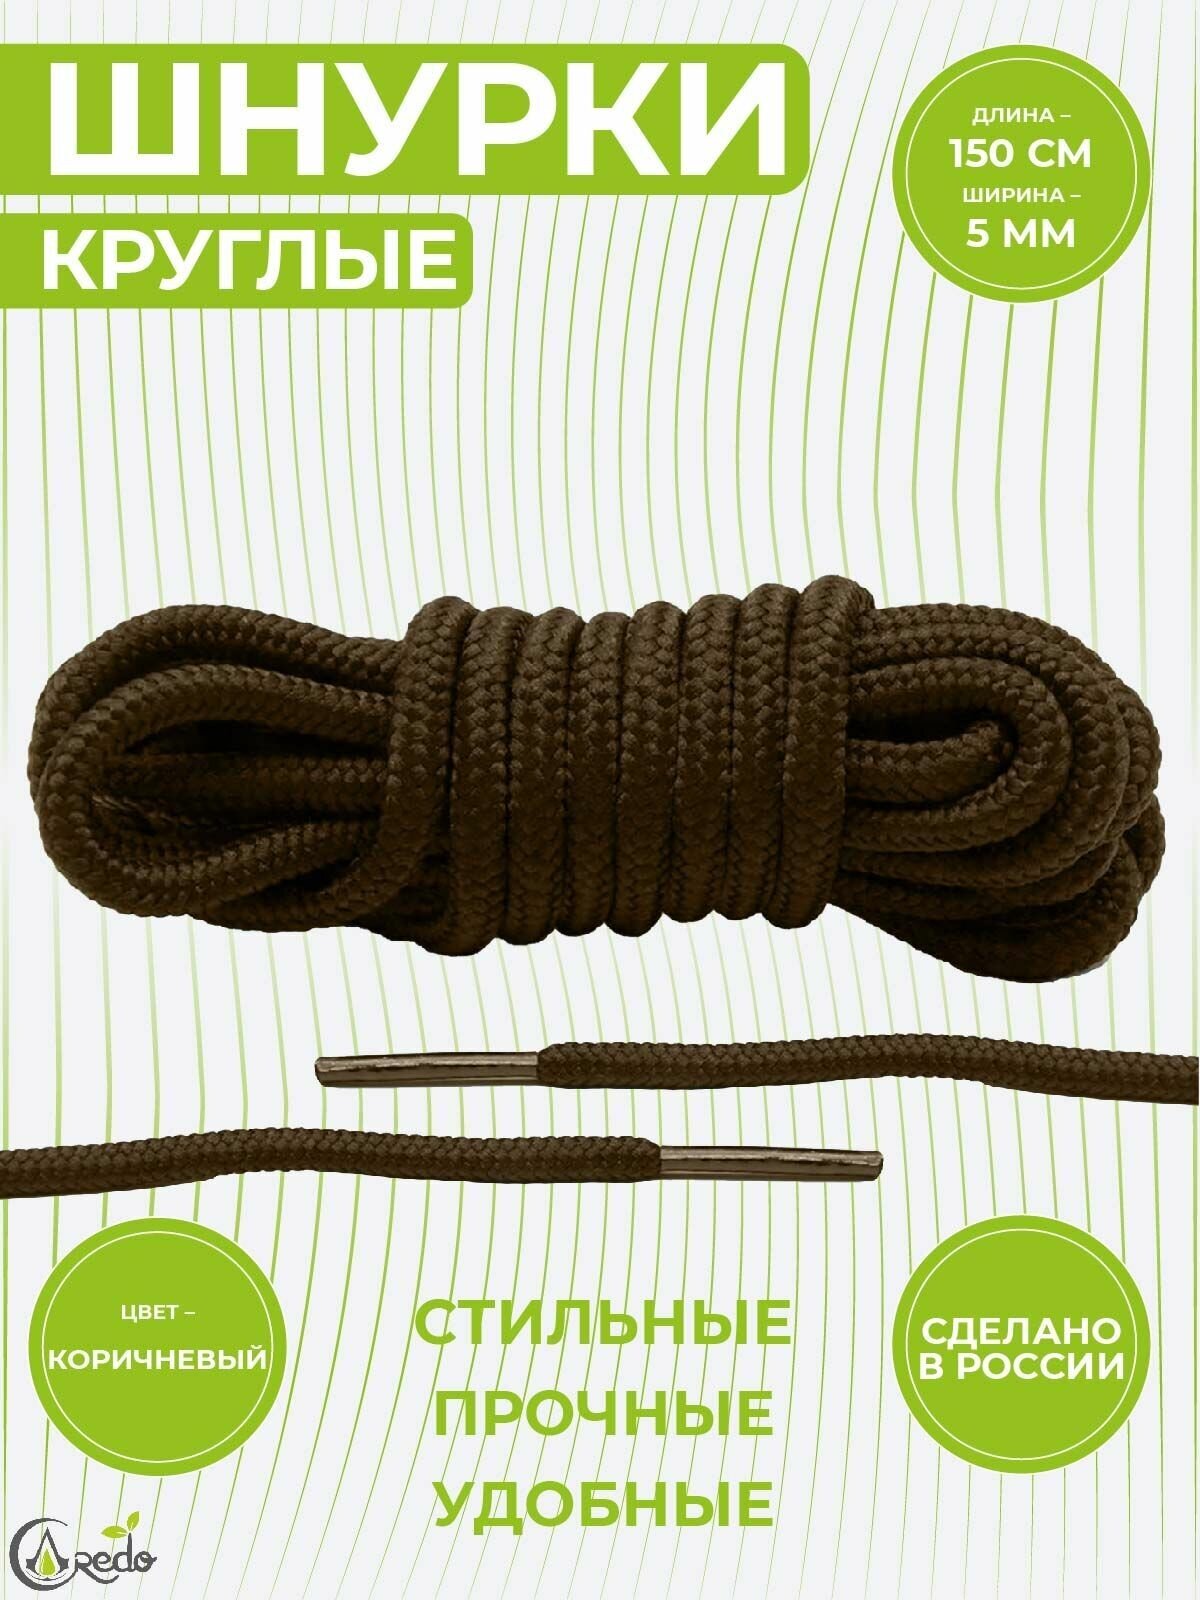 Шнурки для берцев и другой обуви, длина 150 сантиметров, диаметр 5 мм. Сделано в России. Коричневые